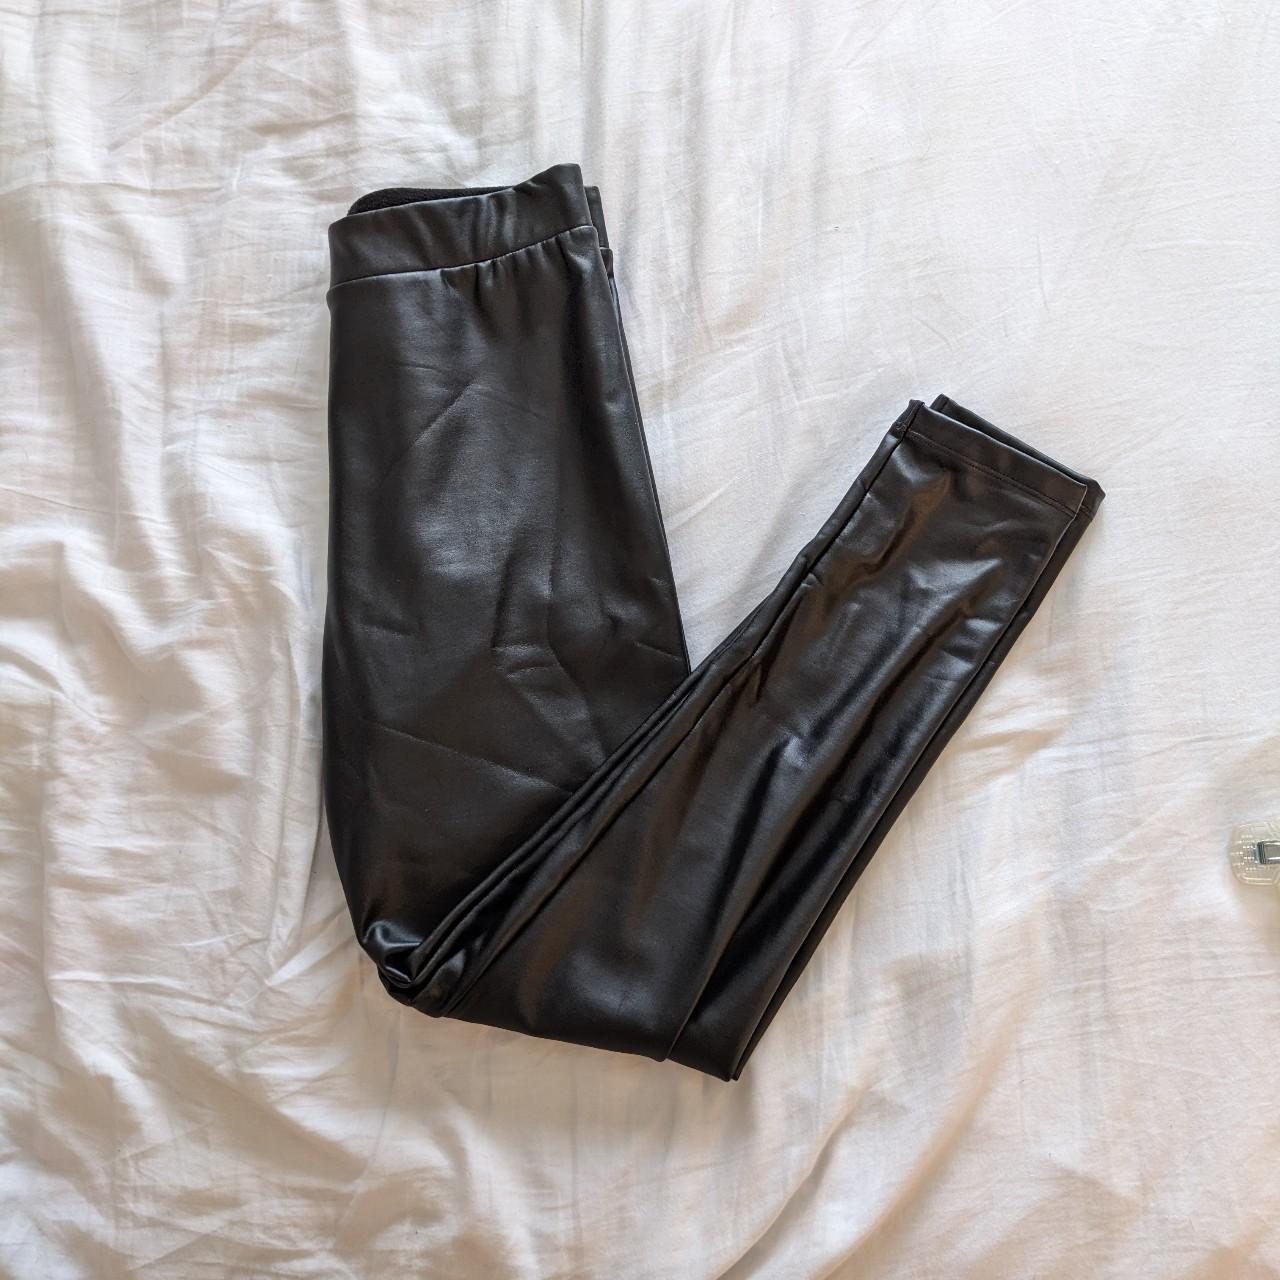 Tezenis black faux leather leggings. Fleece lined so - Depop